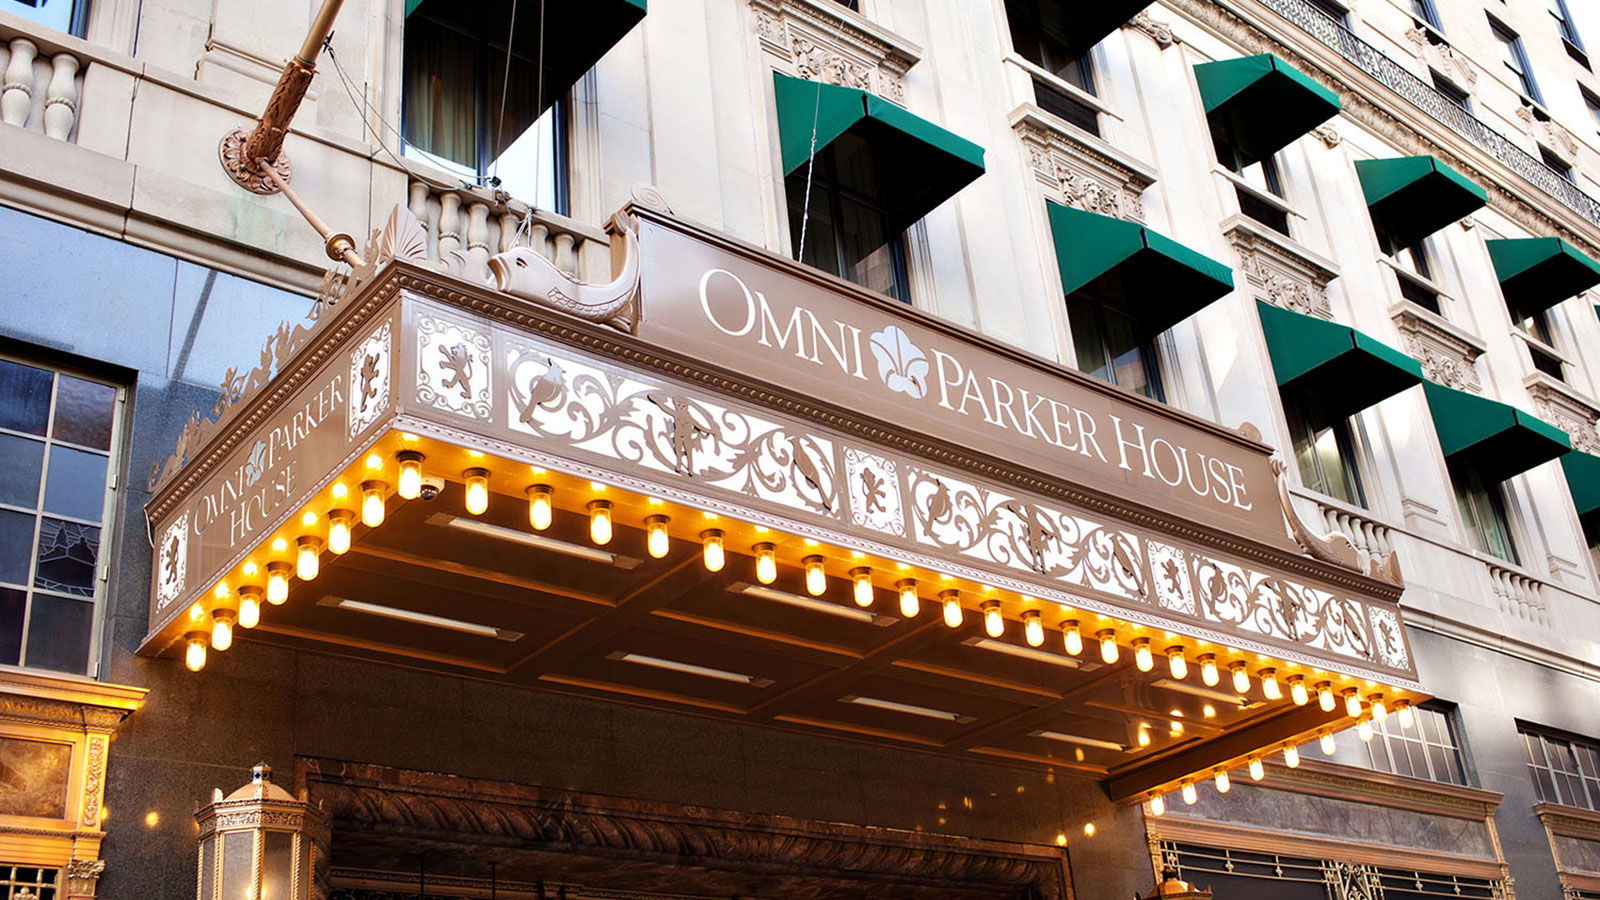 Historic Omni Hotel In Downtown Boston - designazur